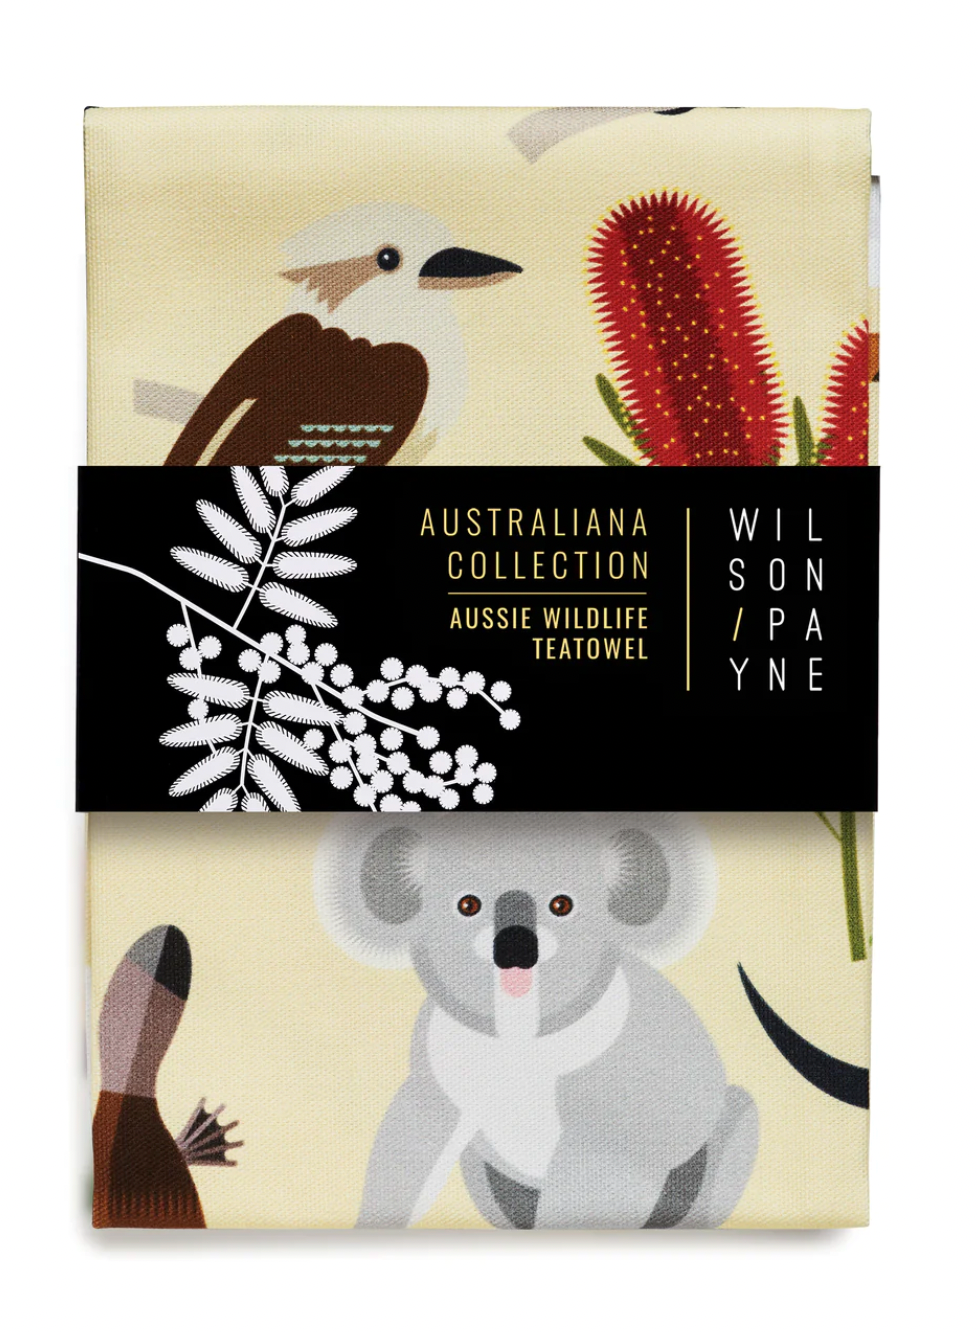 PREORDER - Aussie Wildlife Teatowel - Australiana Collection